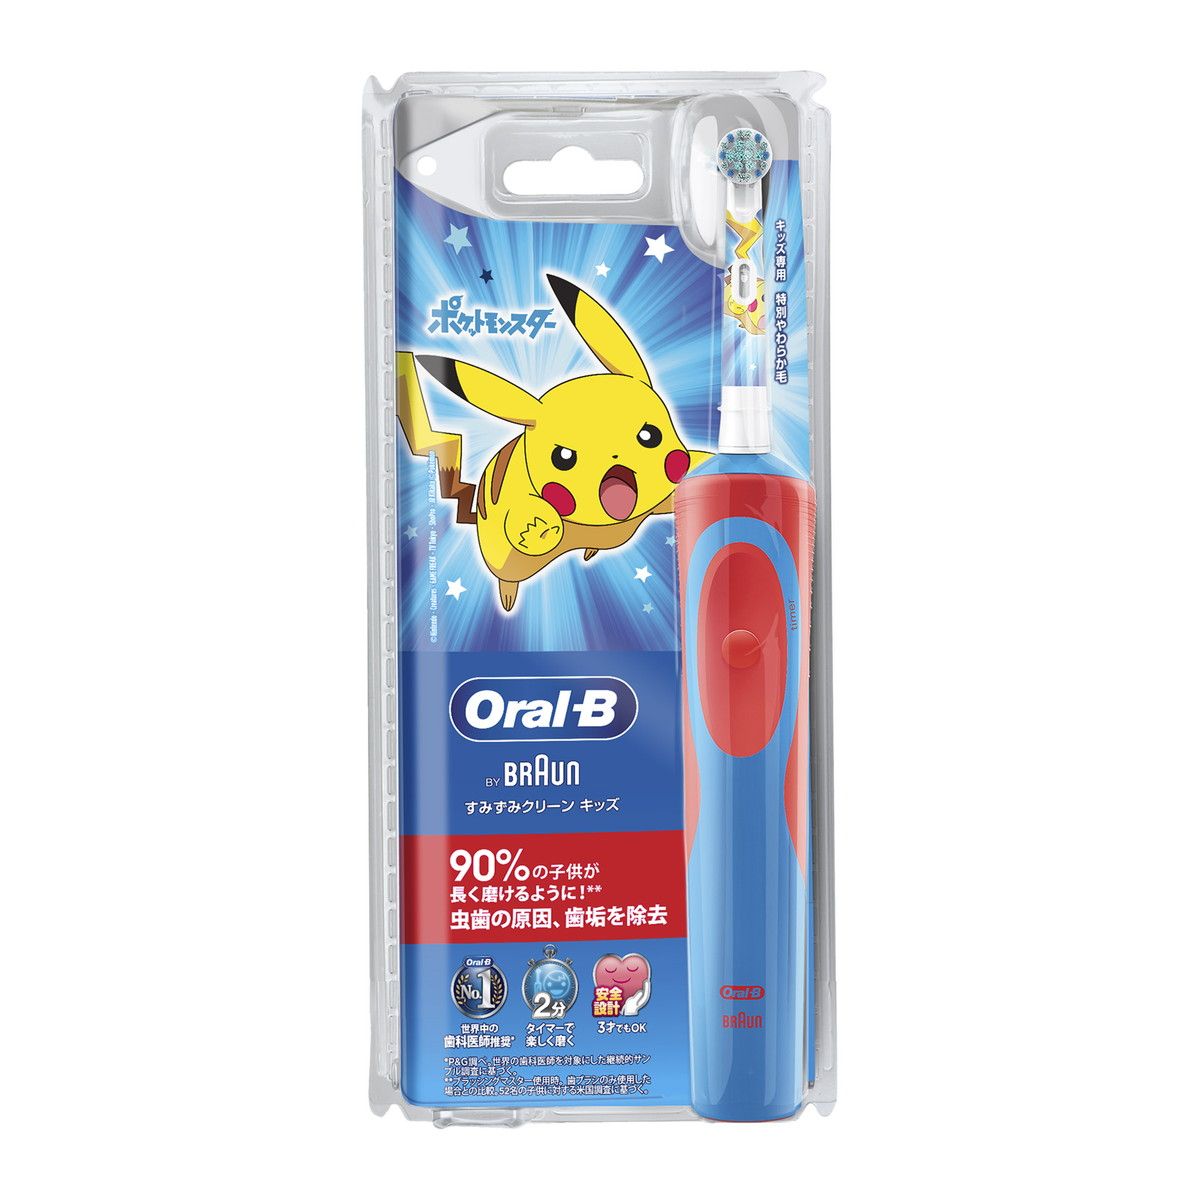  P&G- Bàn chải điện OralB Pikachu cho bé - Đỏ 